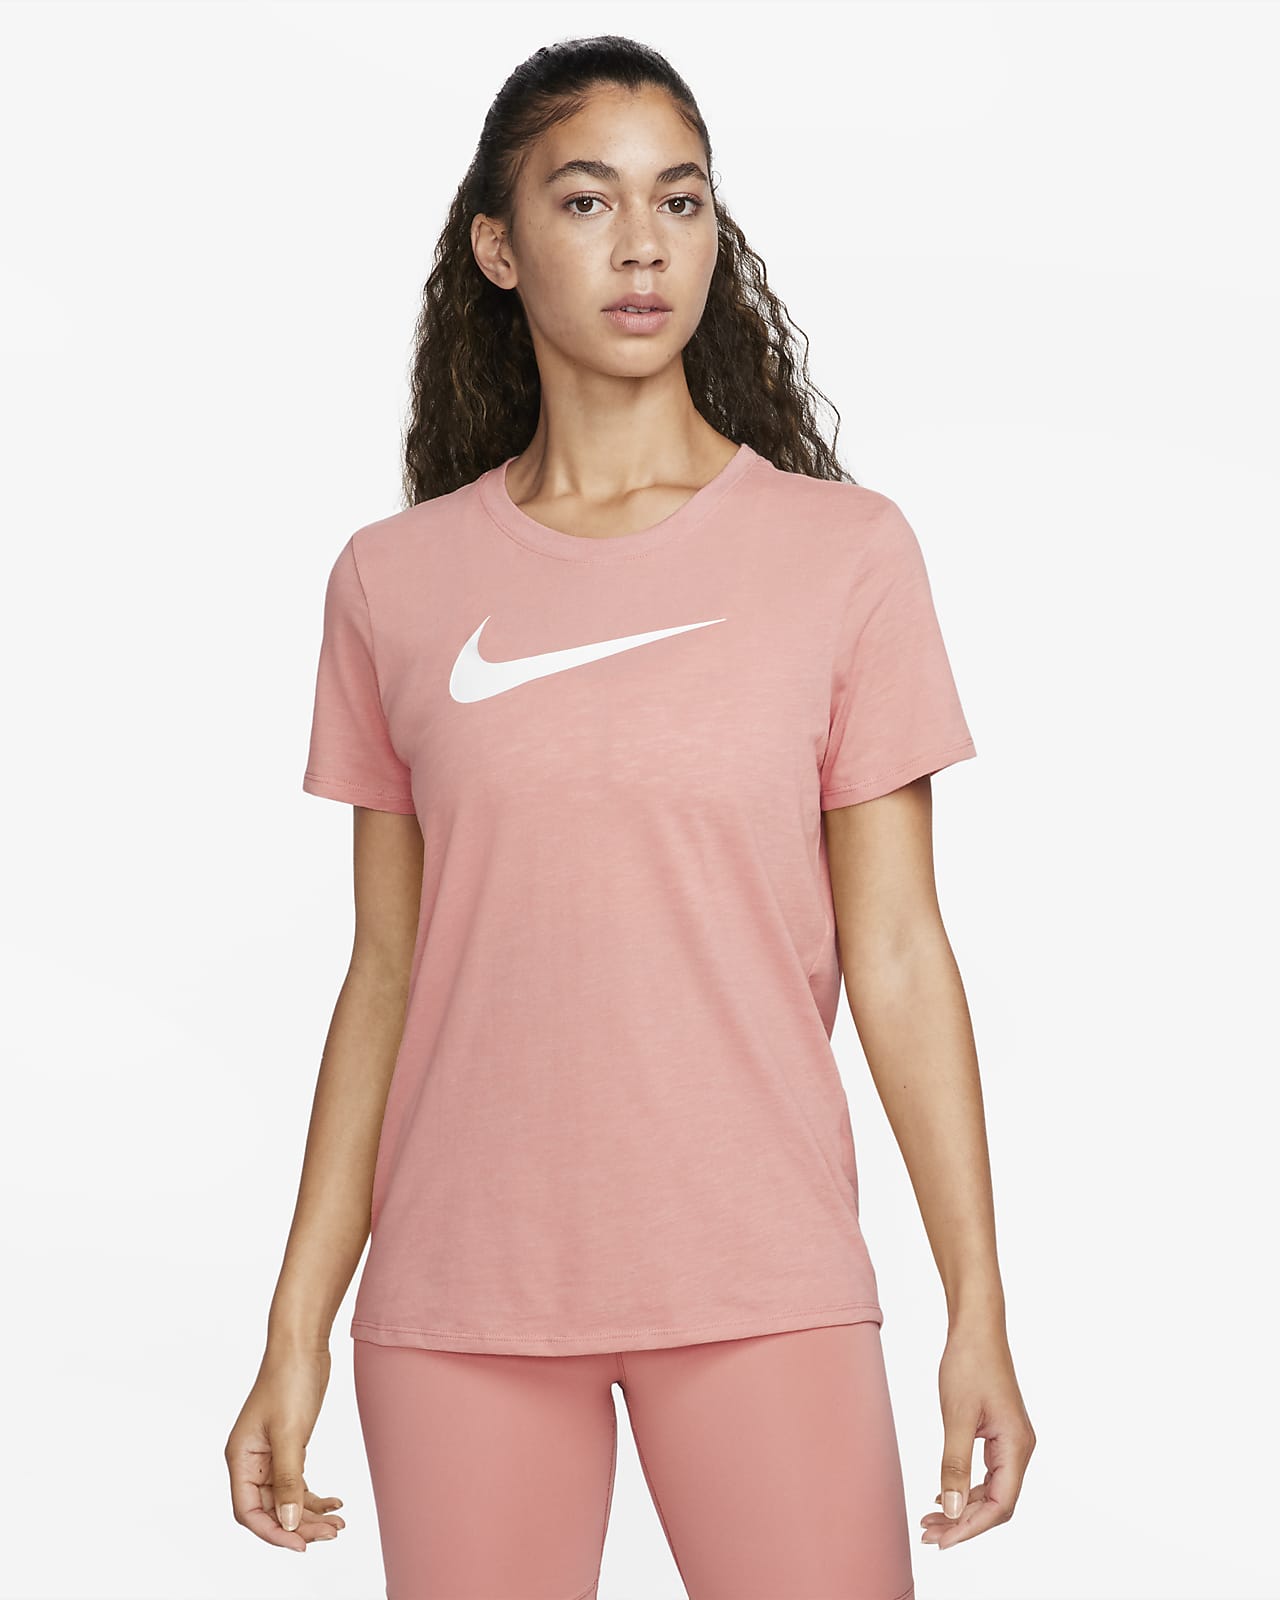 Women's Nike Swoosh Graphic Tee